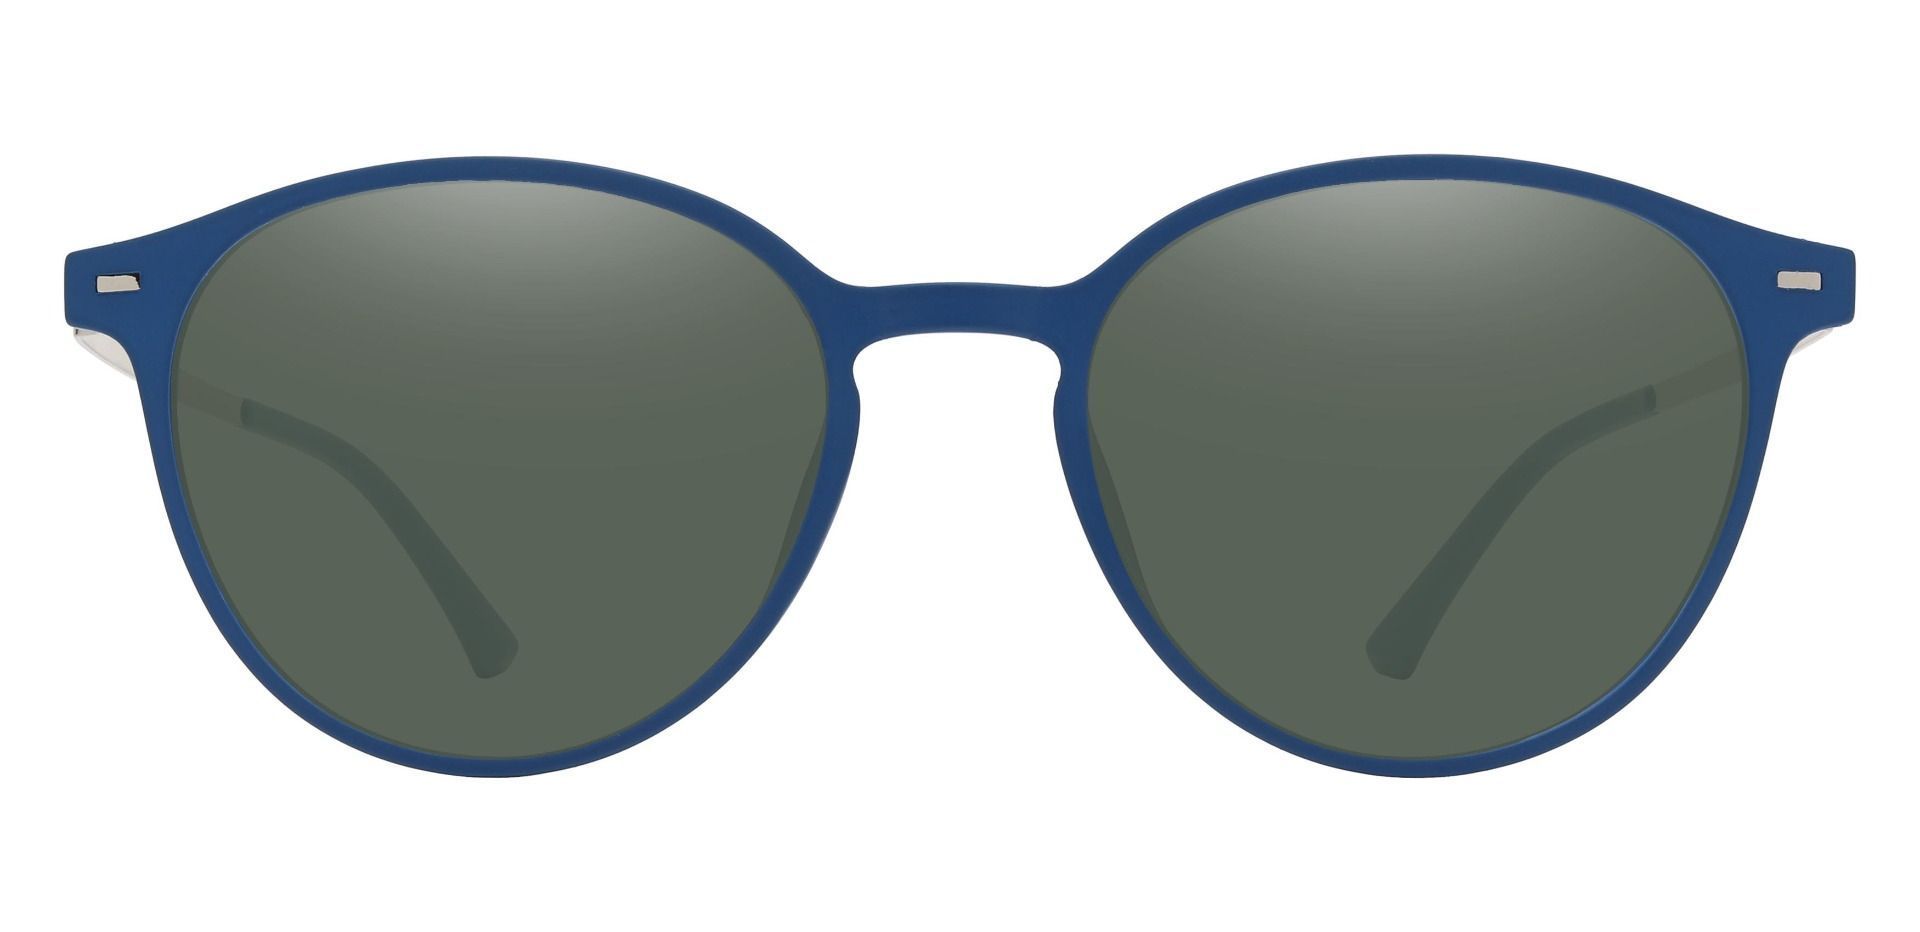 Springer Round Progressive Sunglasses - Blue Frame With Green Lenses